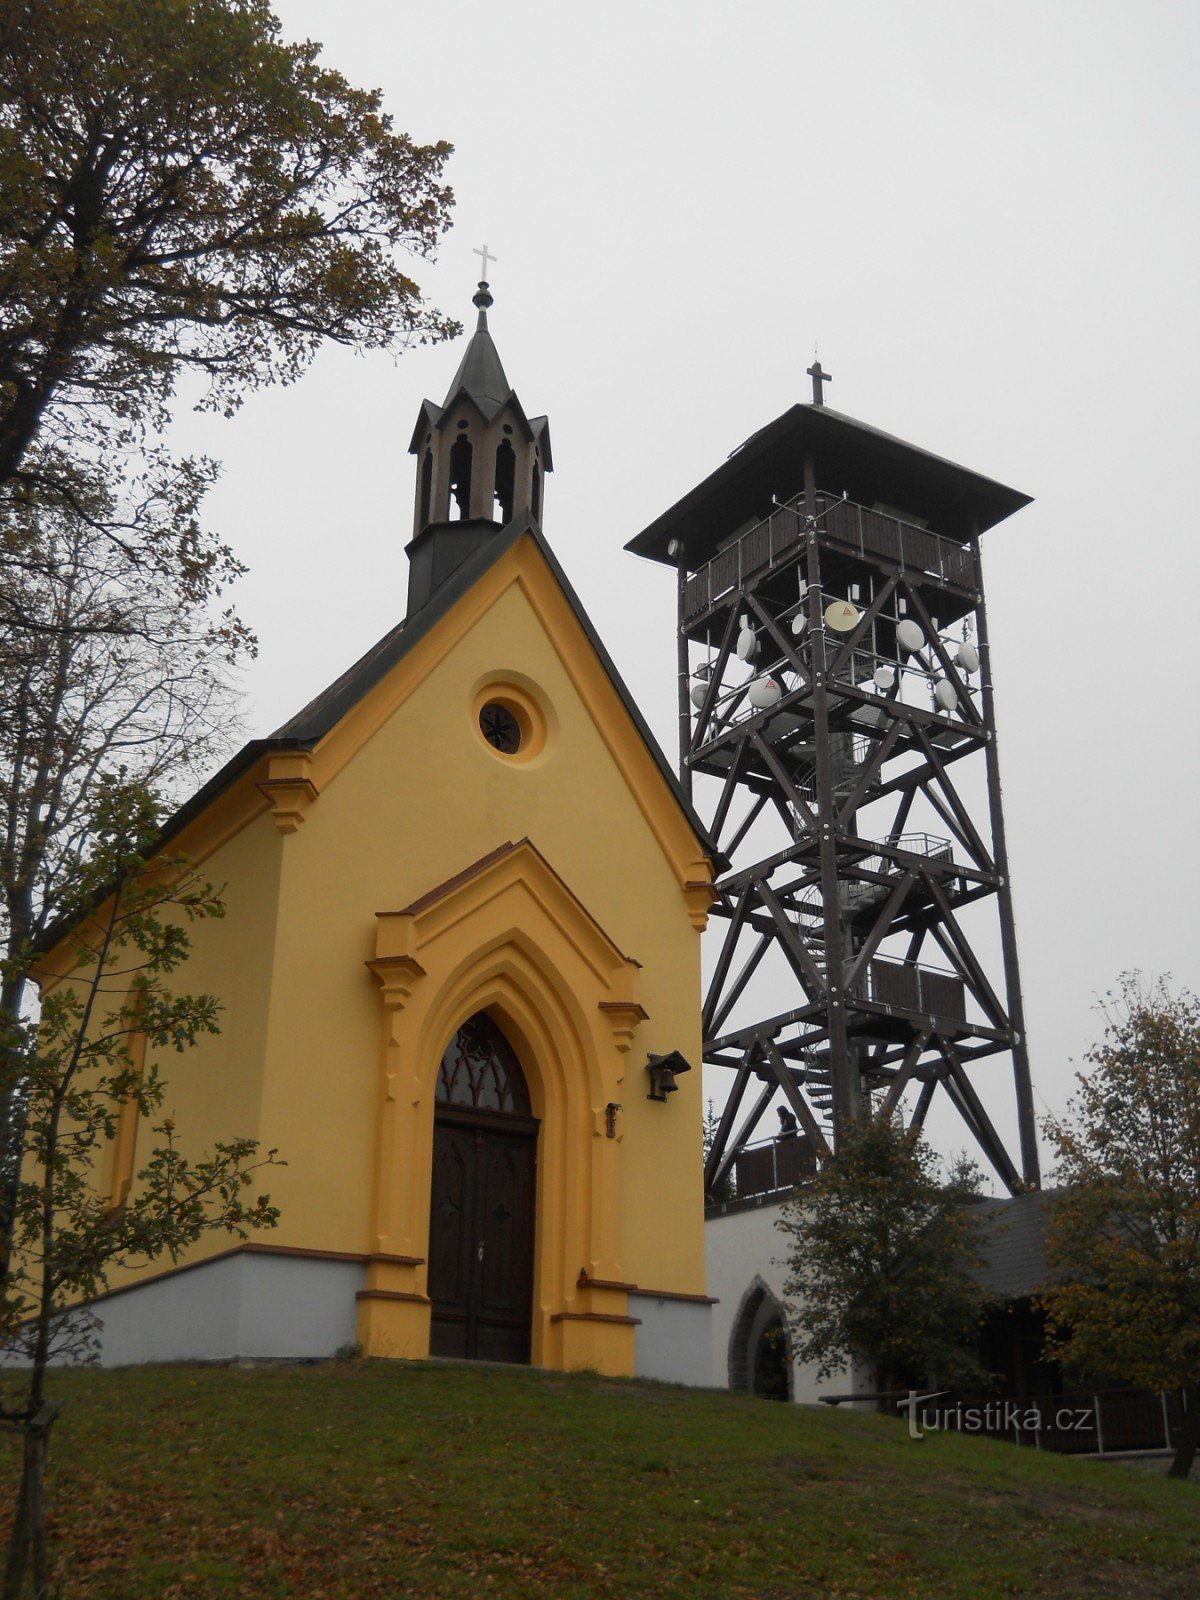 Dlažov - razgledni stolp Marketa in kapela sv. Margareta